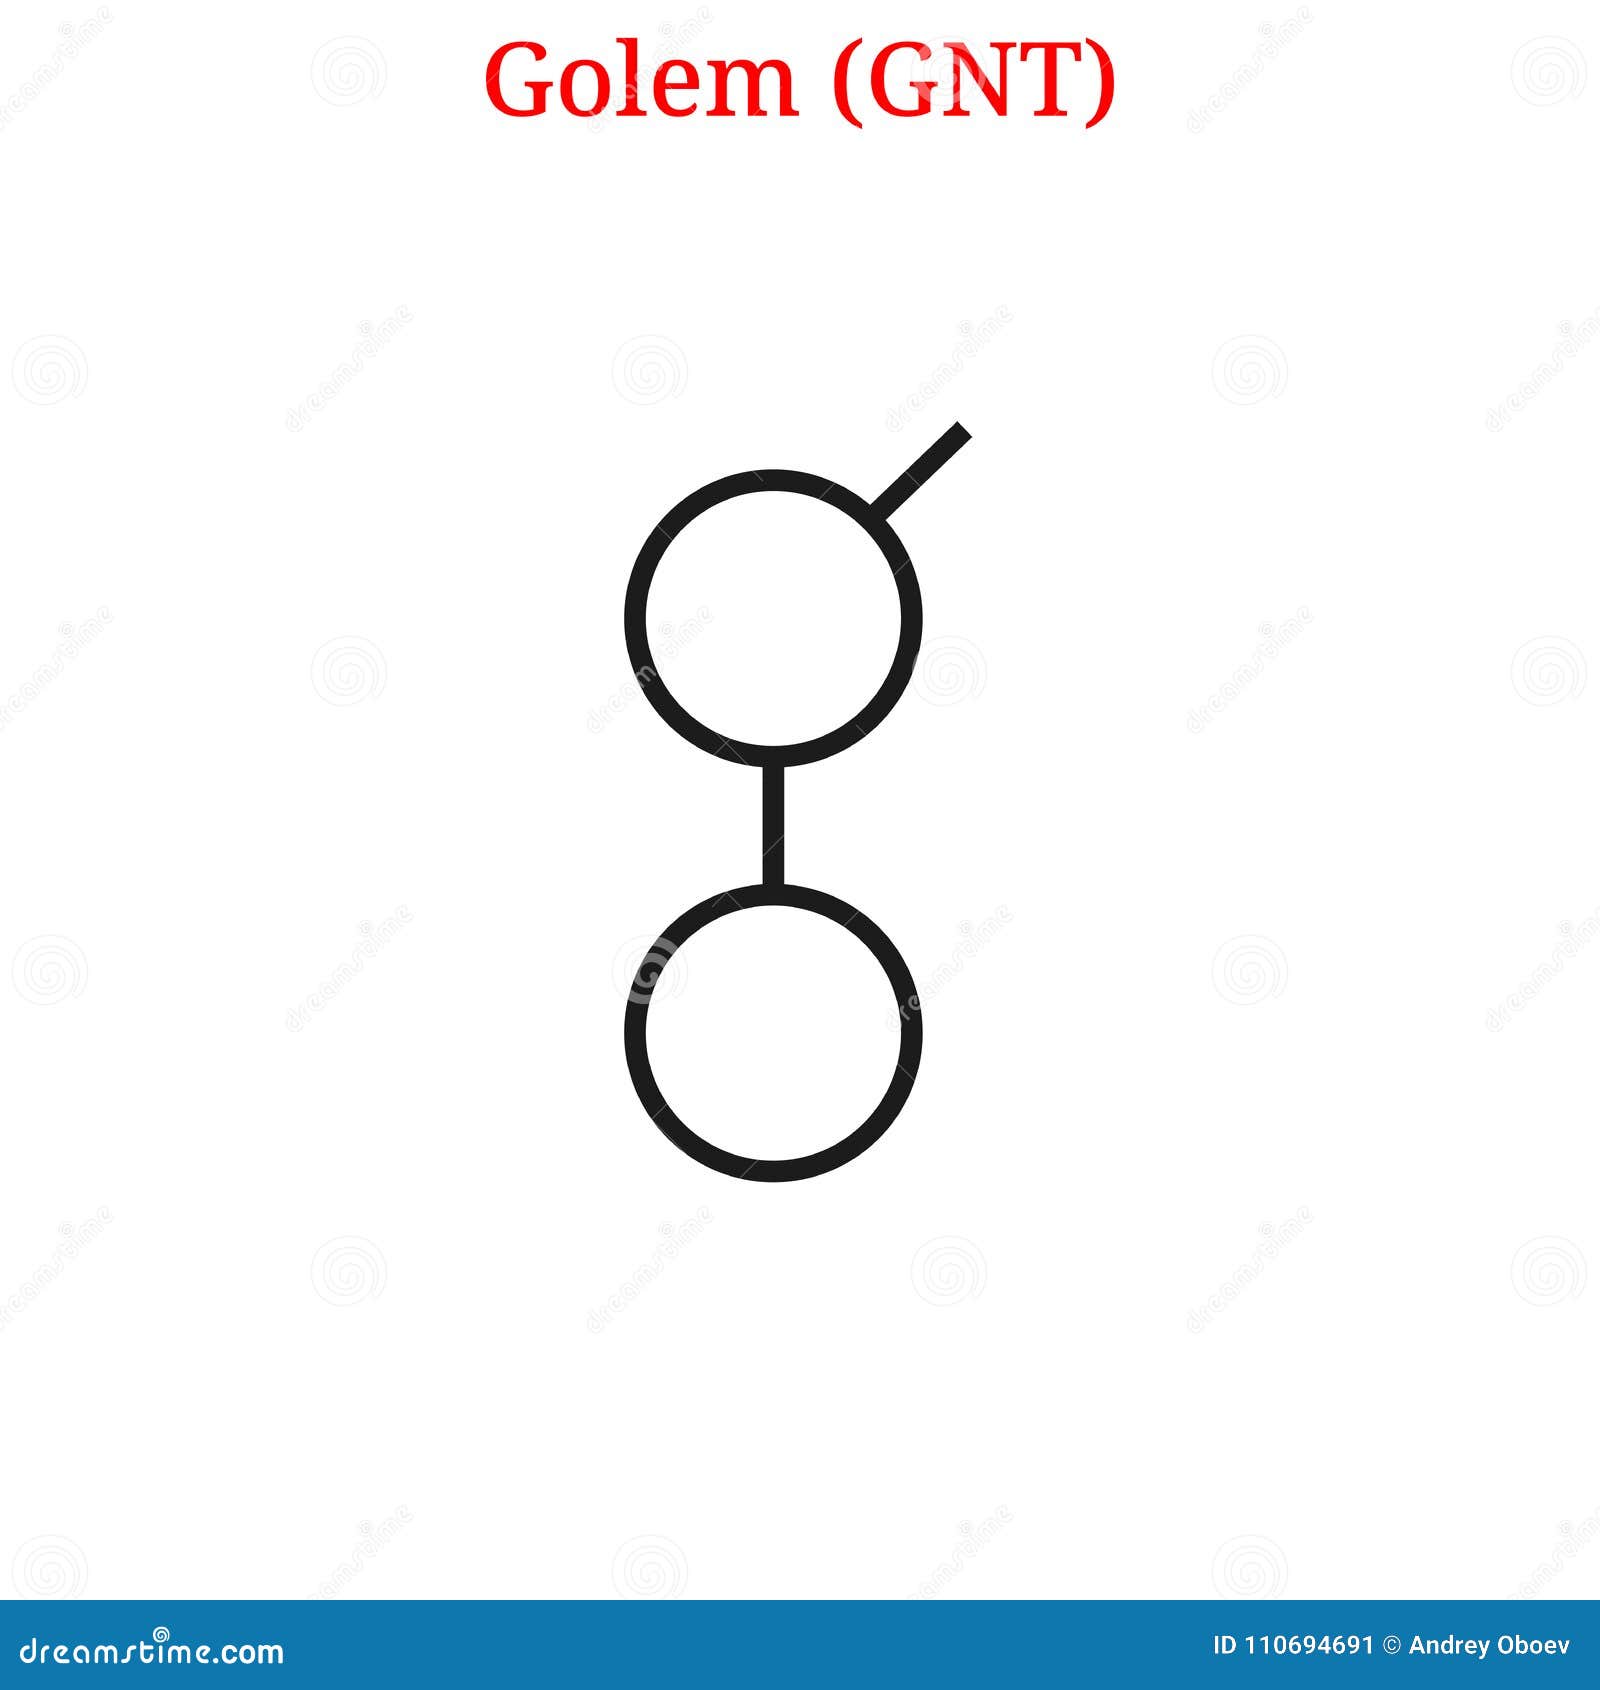 Vector Golem GNT logo stock vector. Illustration of market ...